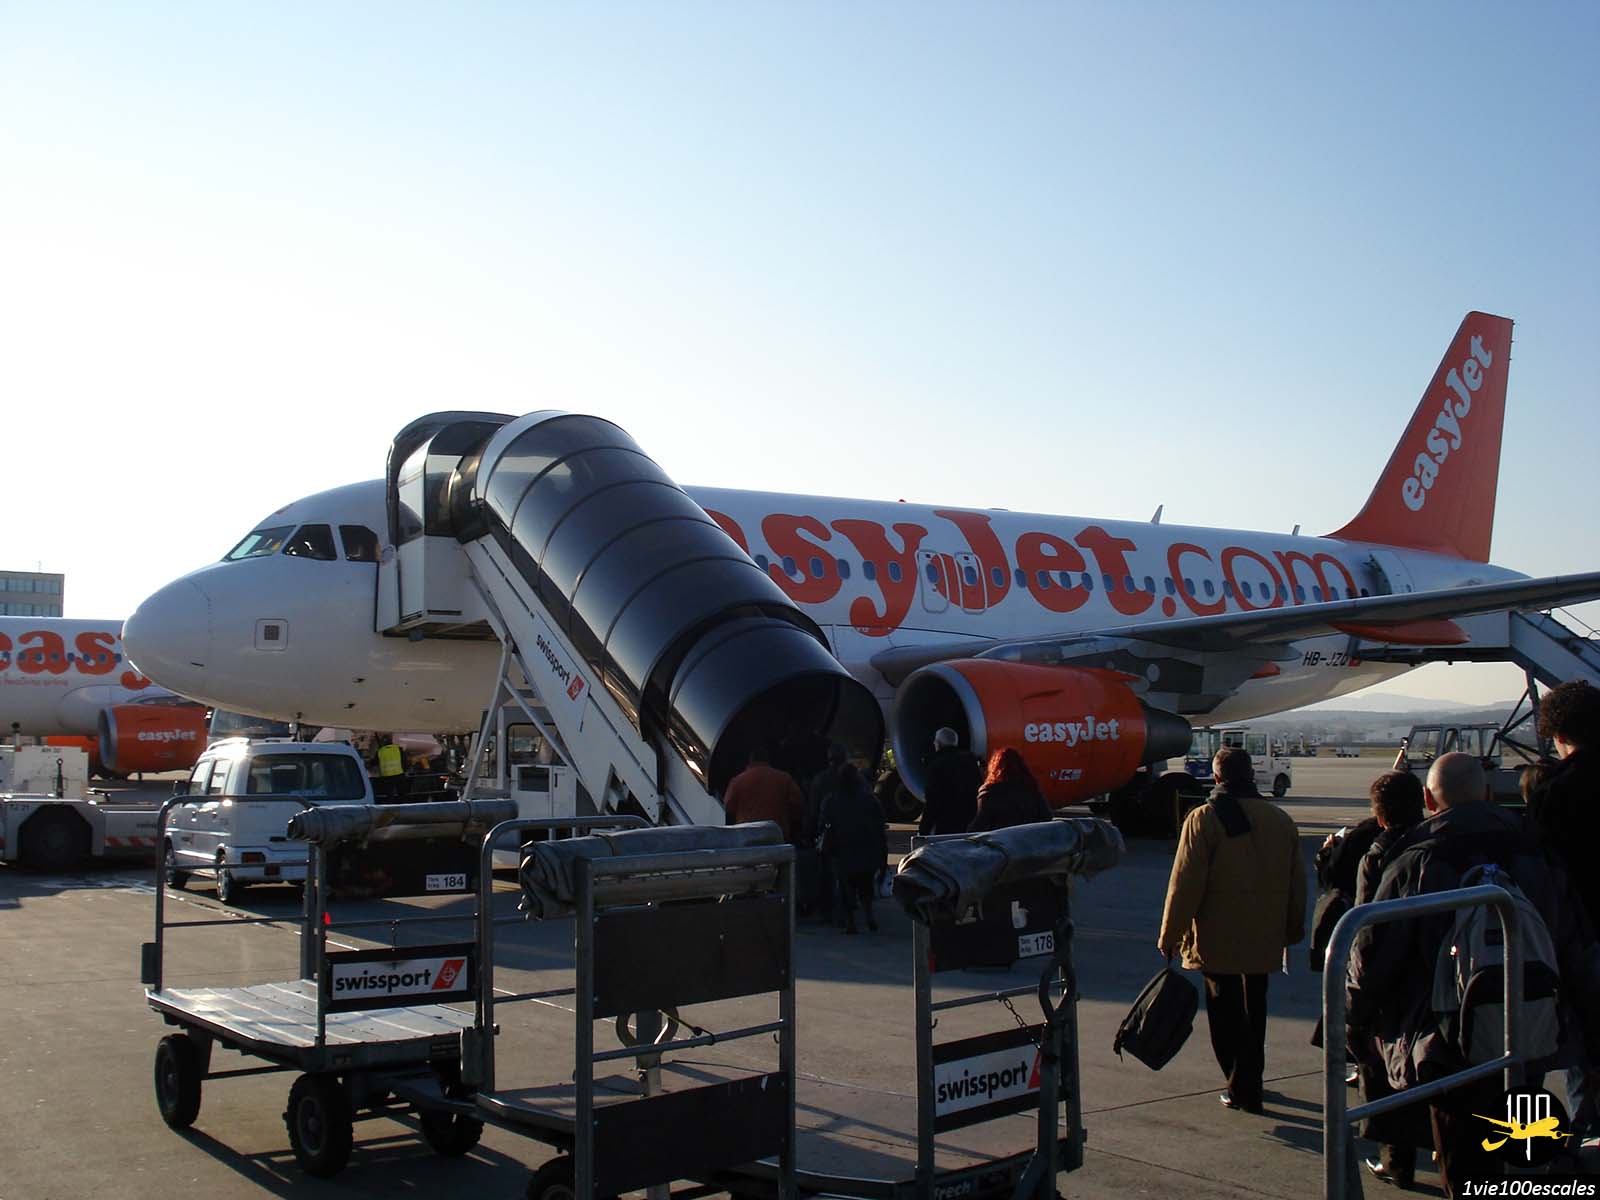 Un avion de la compagnie aérienne Easyjet sur le tarmac de l'aéroport de Bâle-Mulhouse